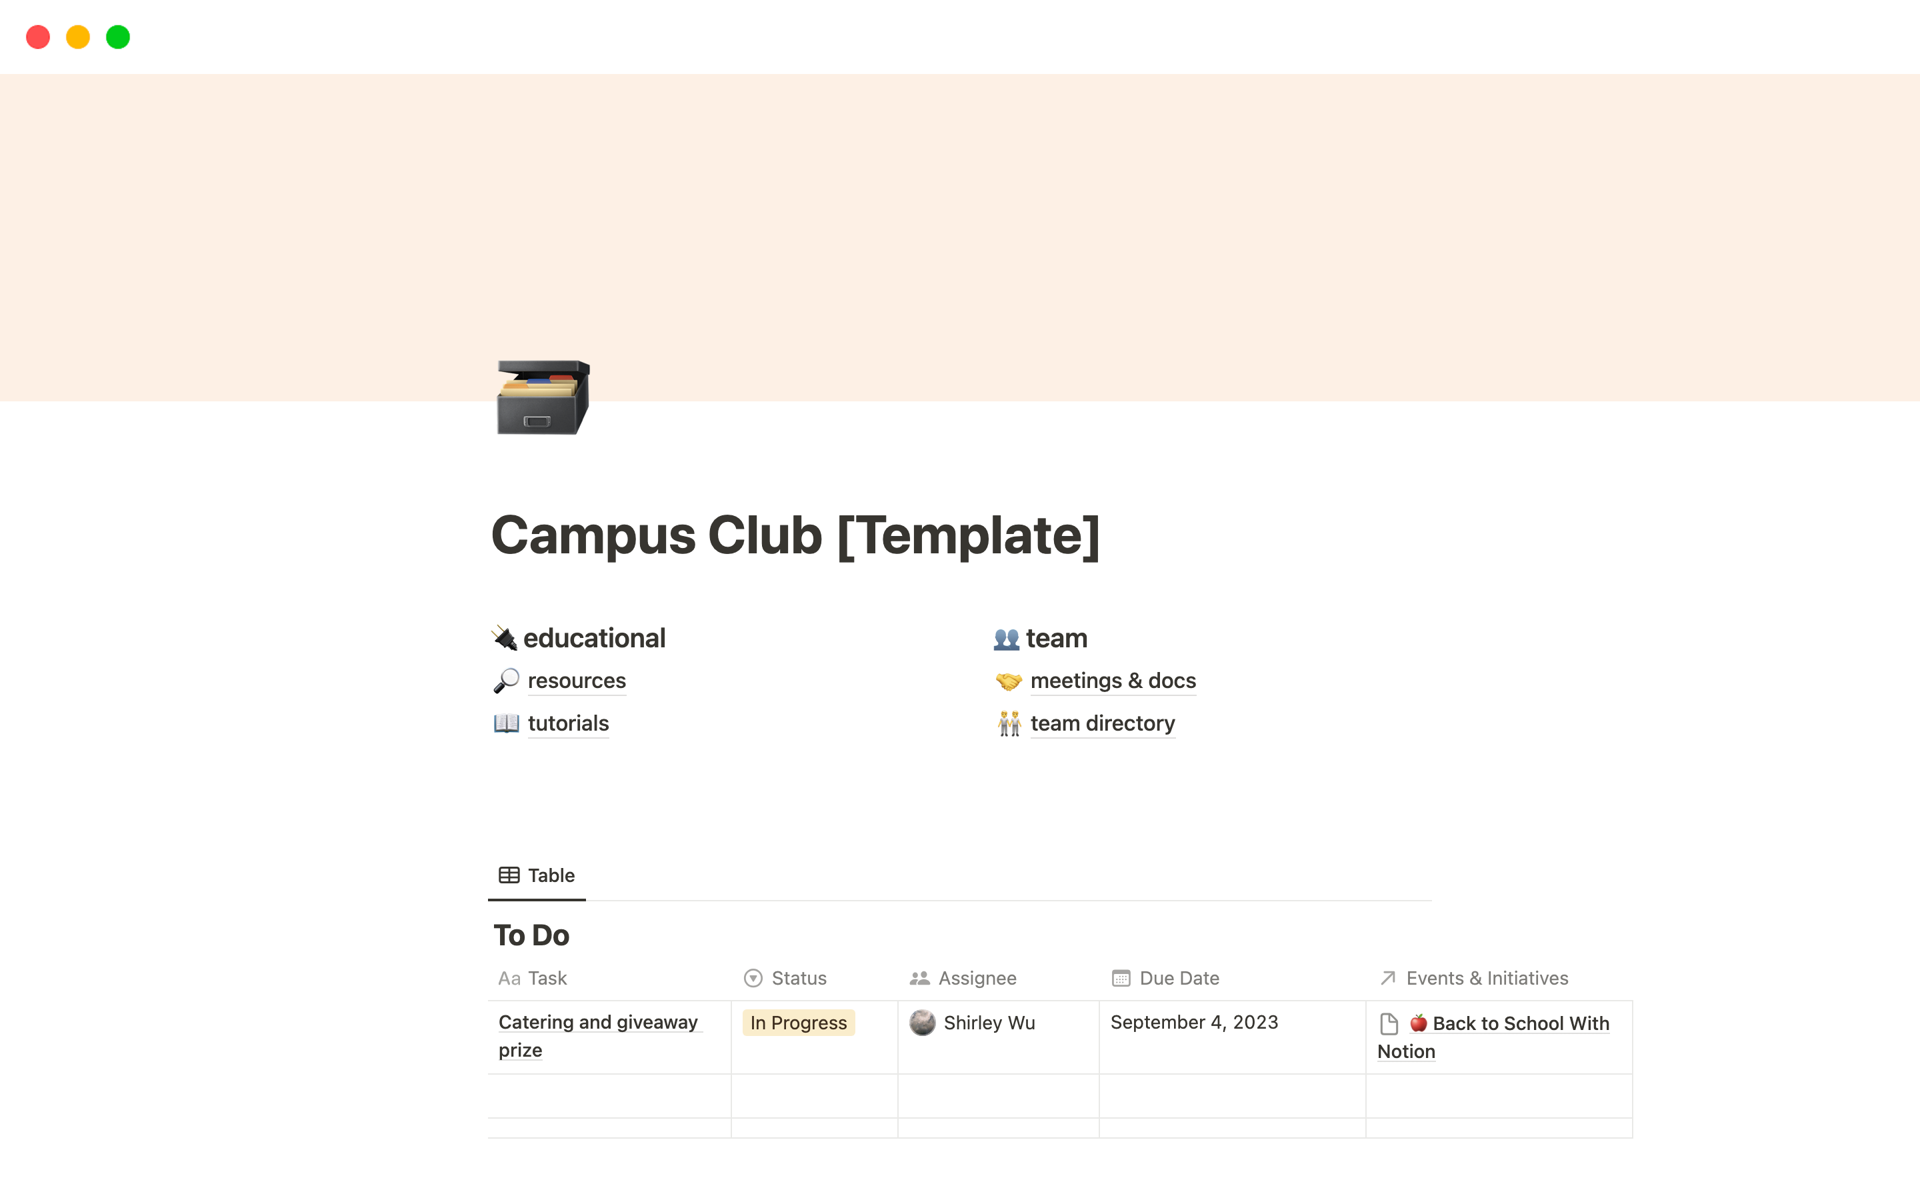 Vista previa de una plantilla para Campus Club Management